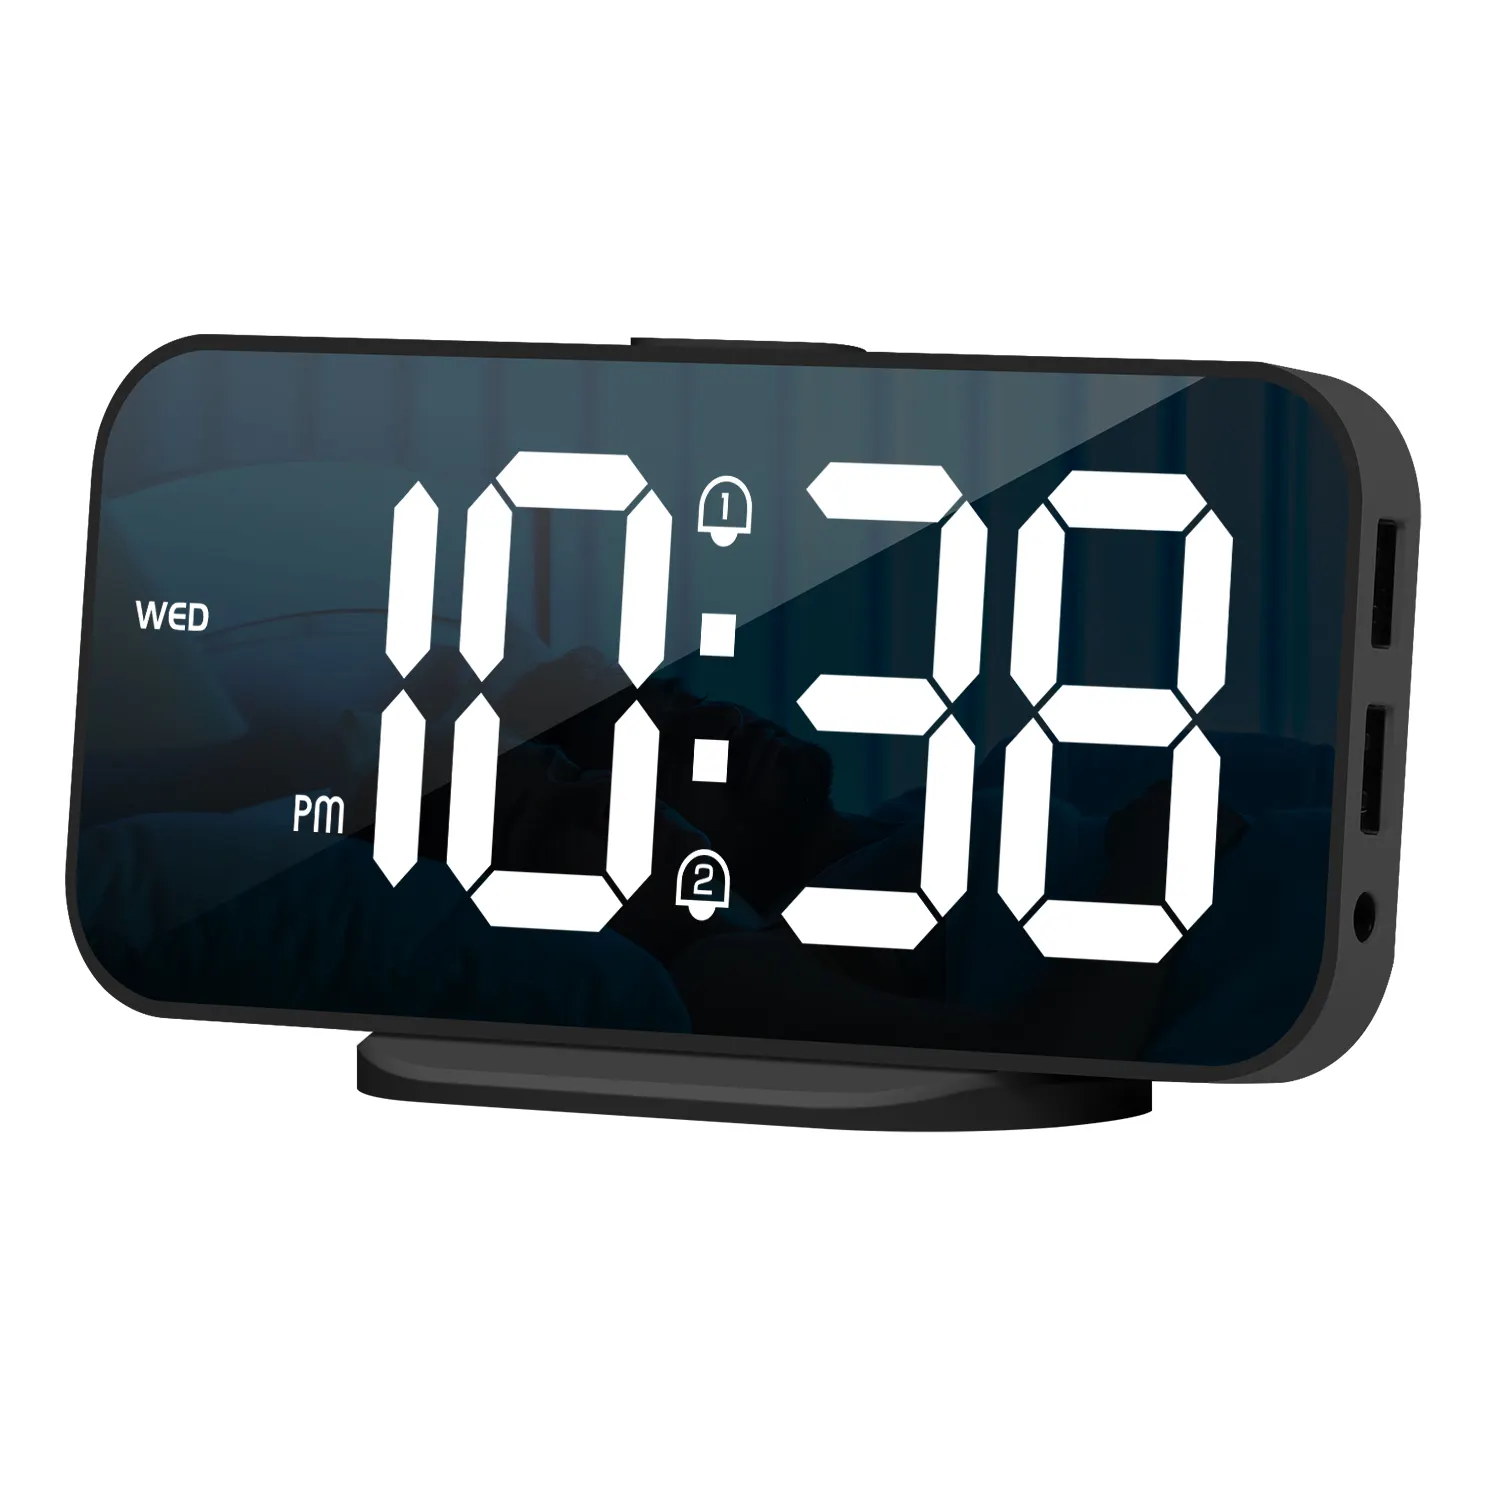 Alarme numérique 3d intelligente, horloge, horloges murales, décoration de la maison, bureau numérique à Led avec température, Date, heure, grande horloge de Table nordique/